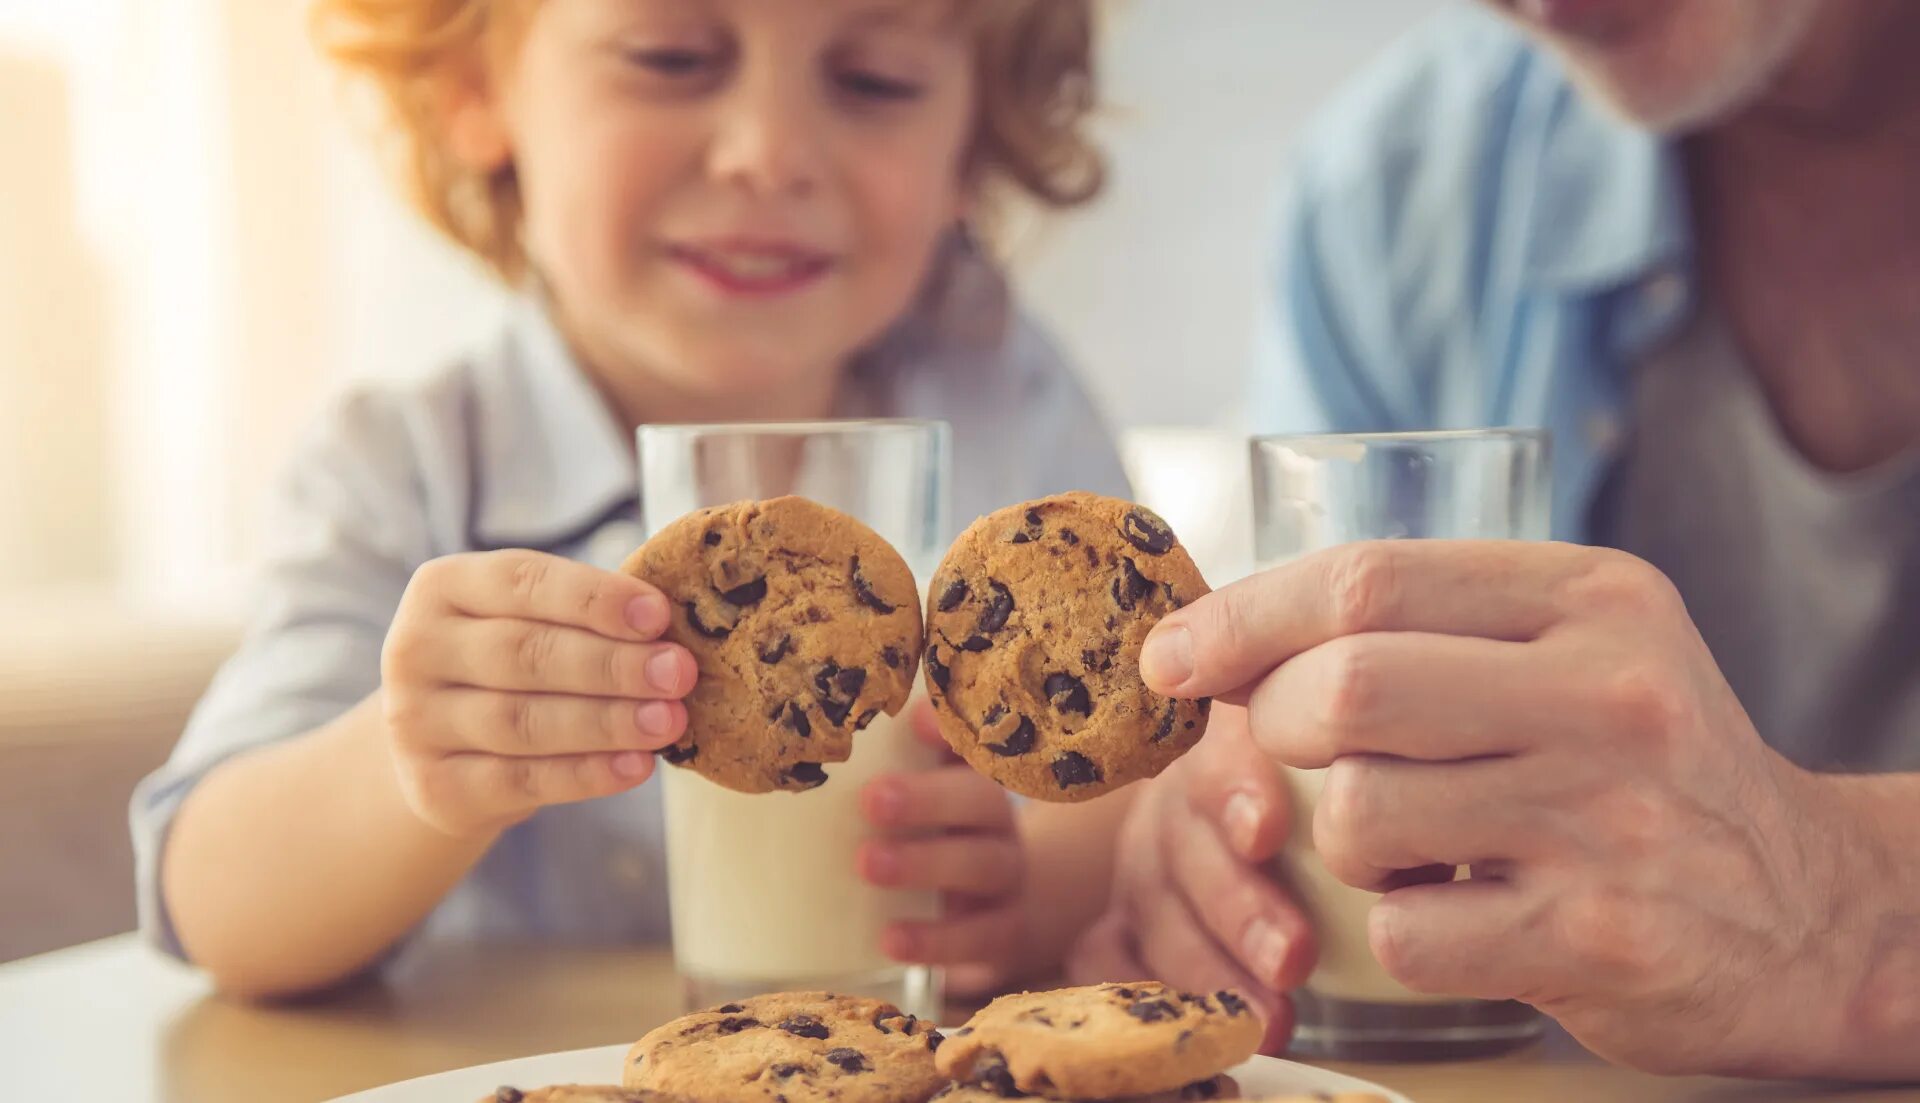 Печенье для детей. Ребенок ест печенье. Люди едят шоколадное печенье. Печенье в руке. Cookies соглашаться